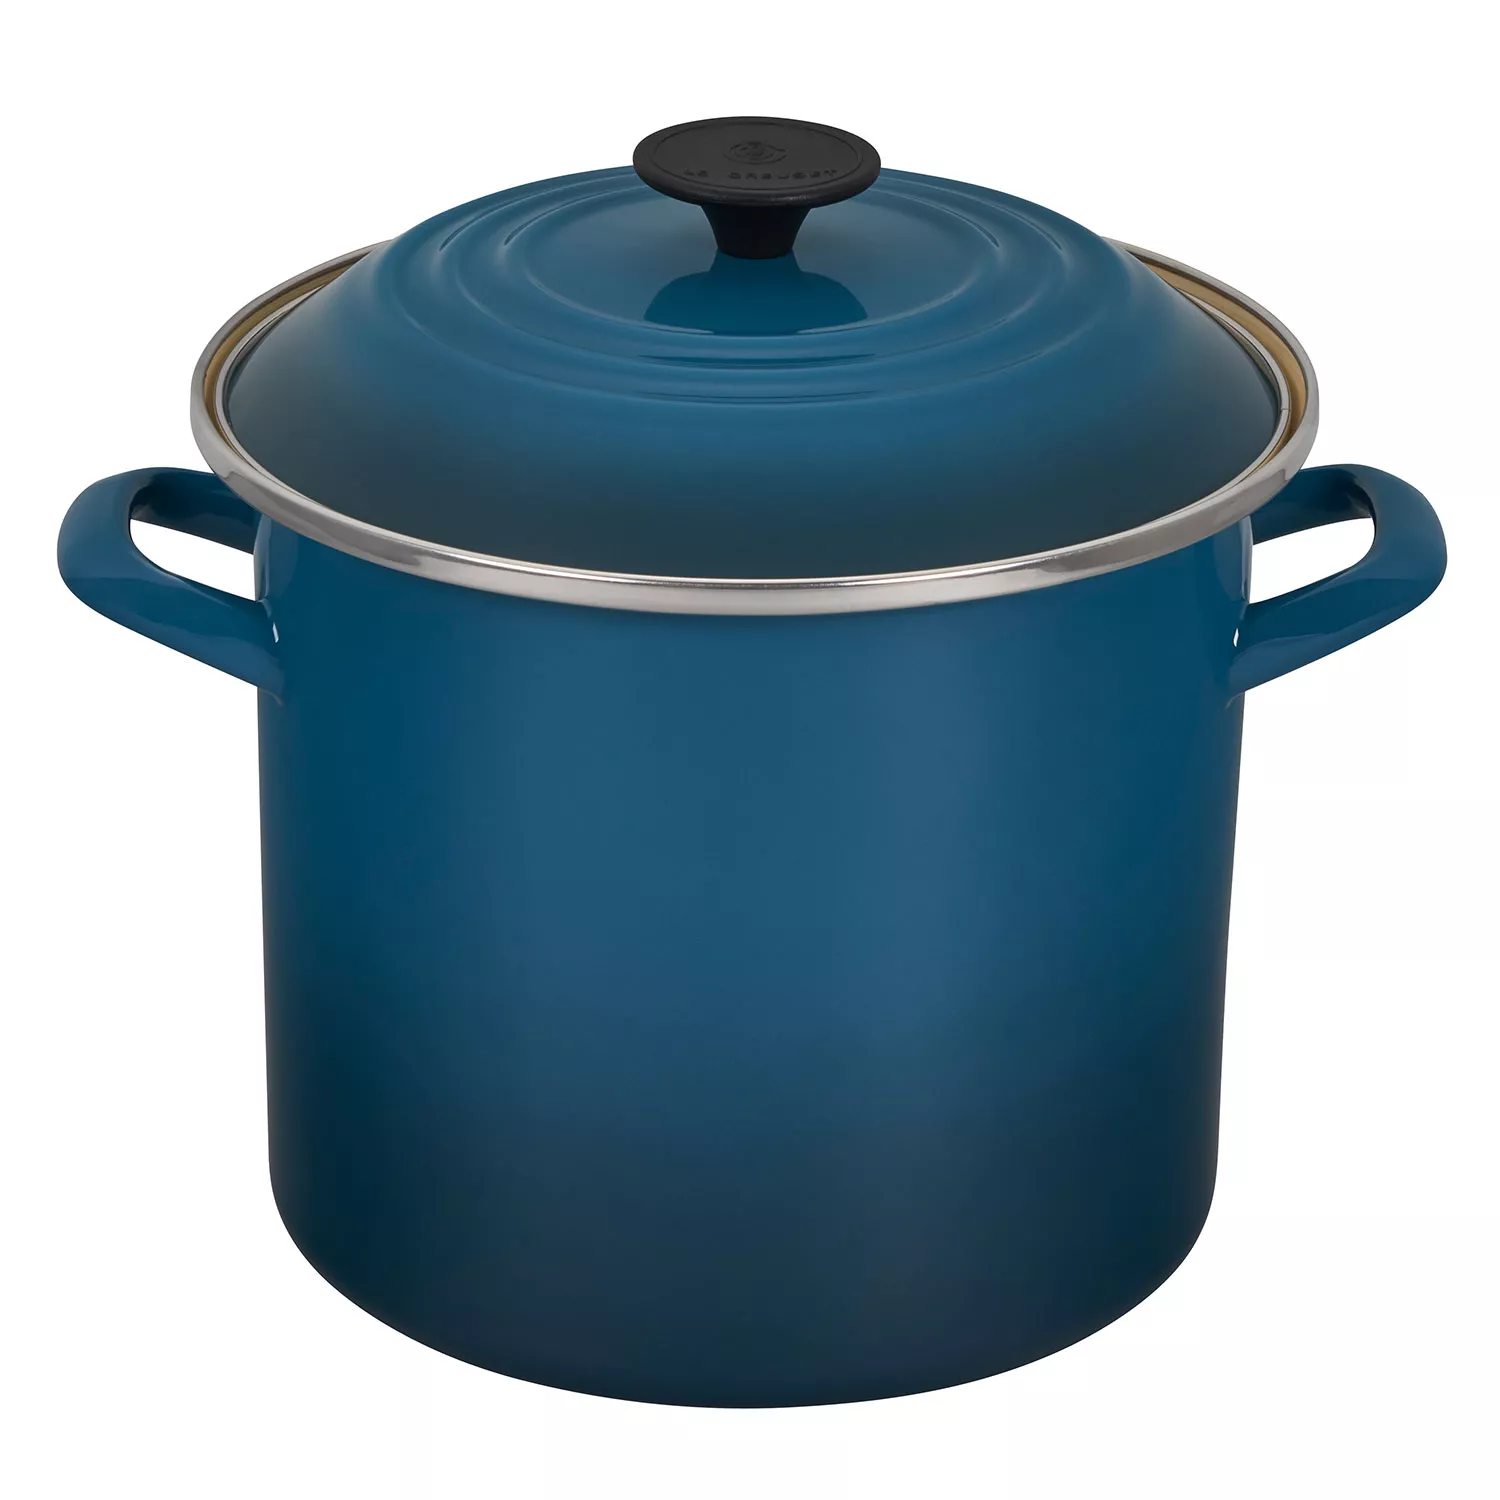 Le Creuset Solid Turquoise Enamel on Steel Stock Pot Soup 3 7/8 Qt